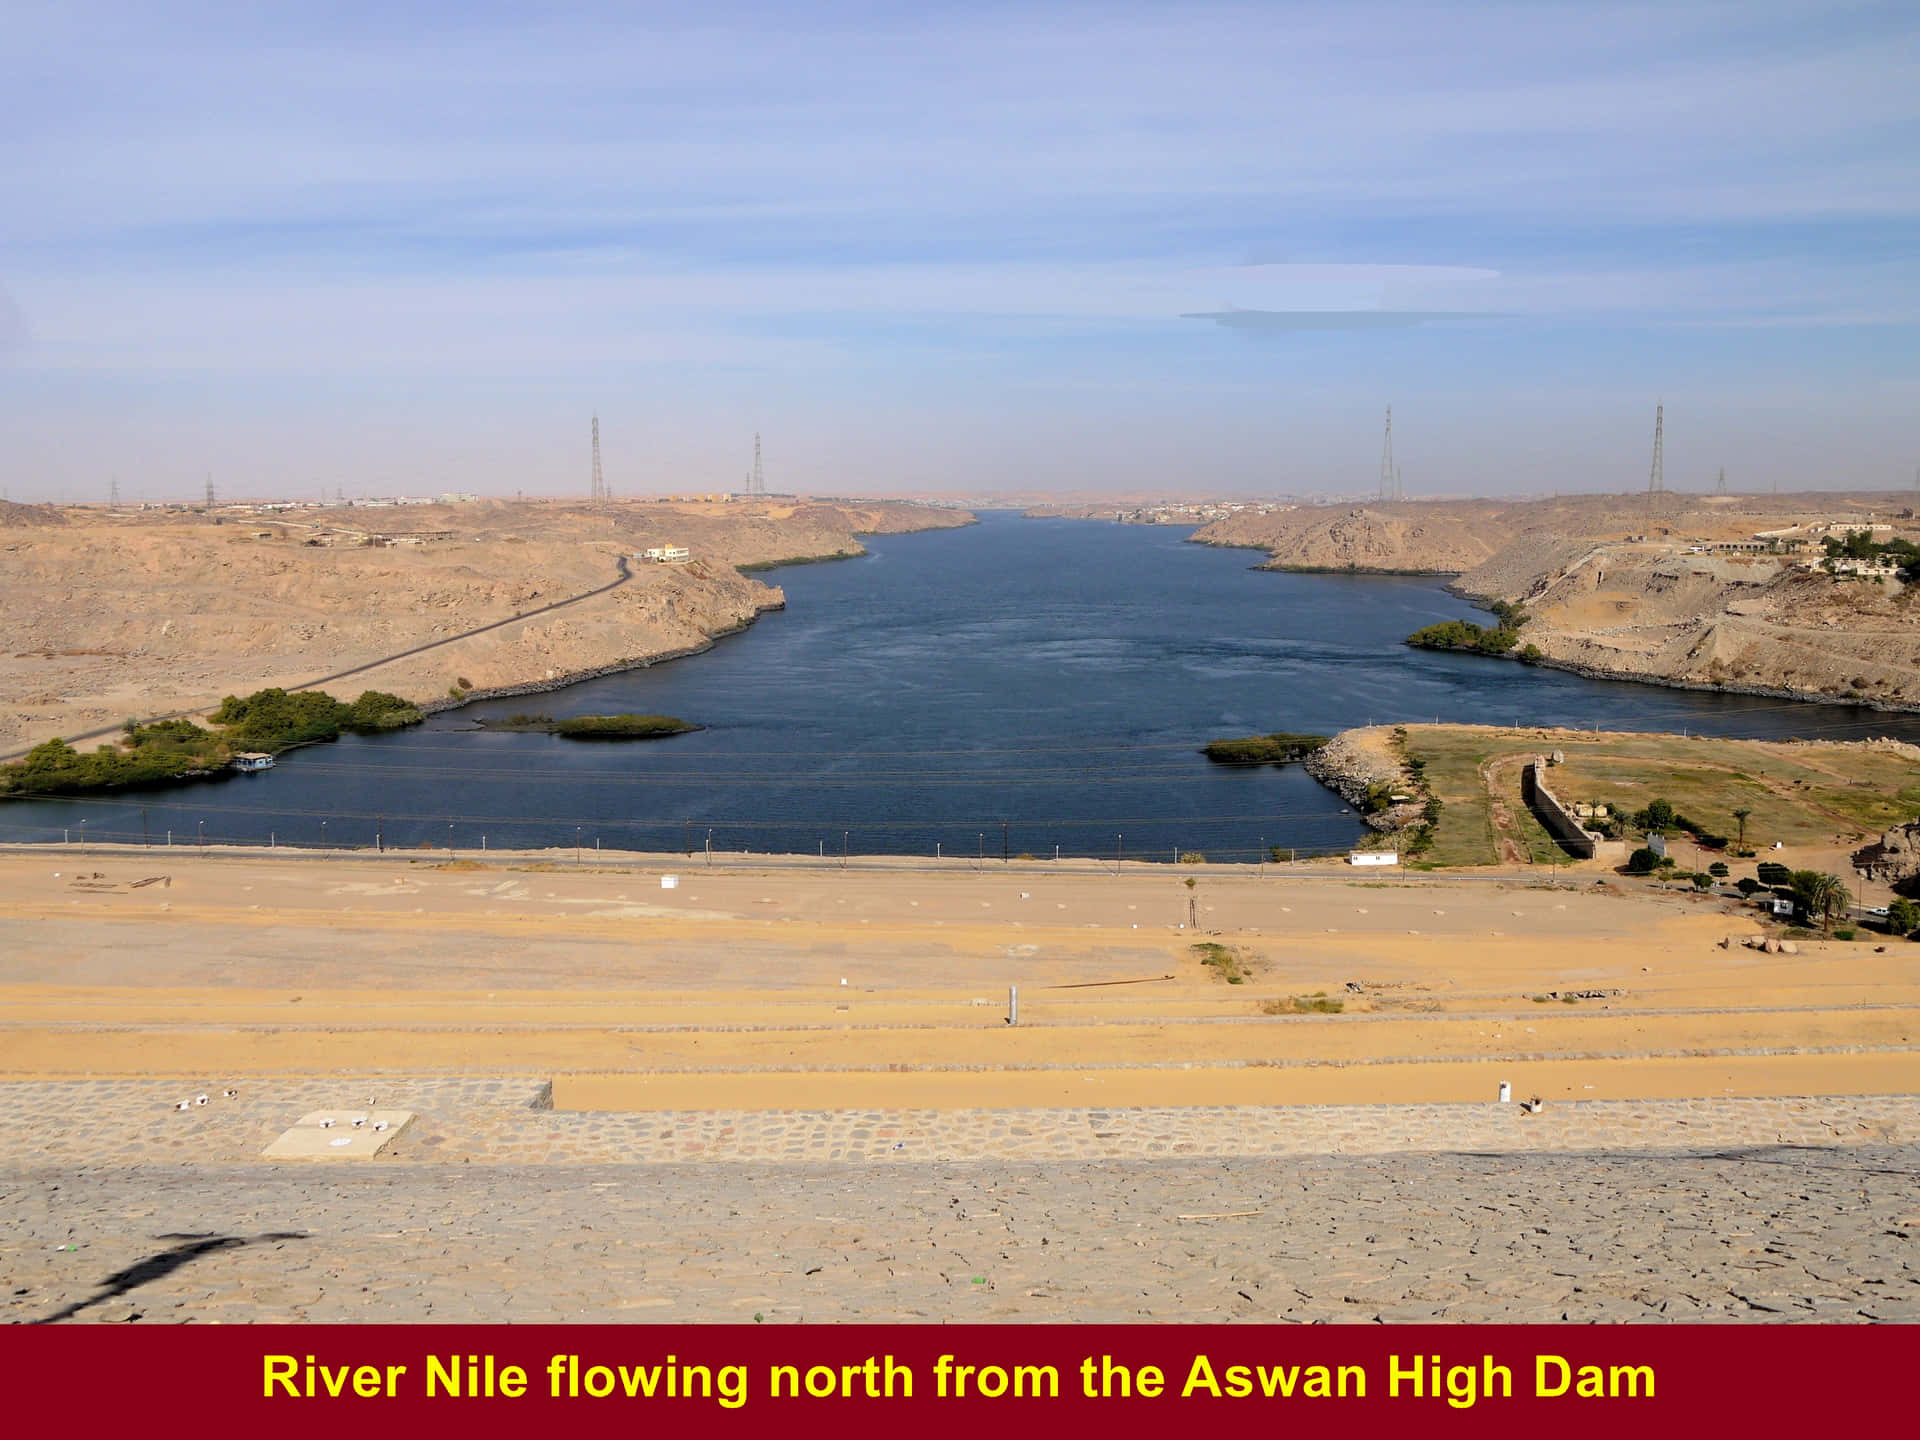 Aswan High Dam Endnu et smukt billede af Aswan High Dam! Wallpaper